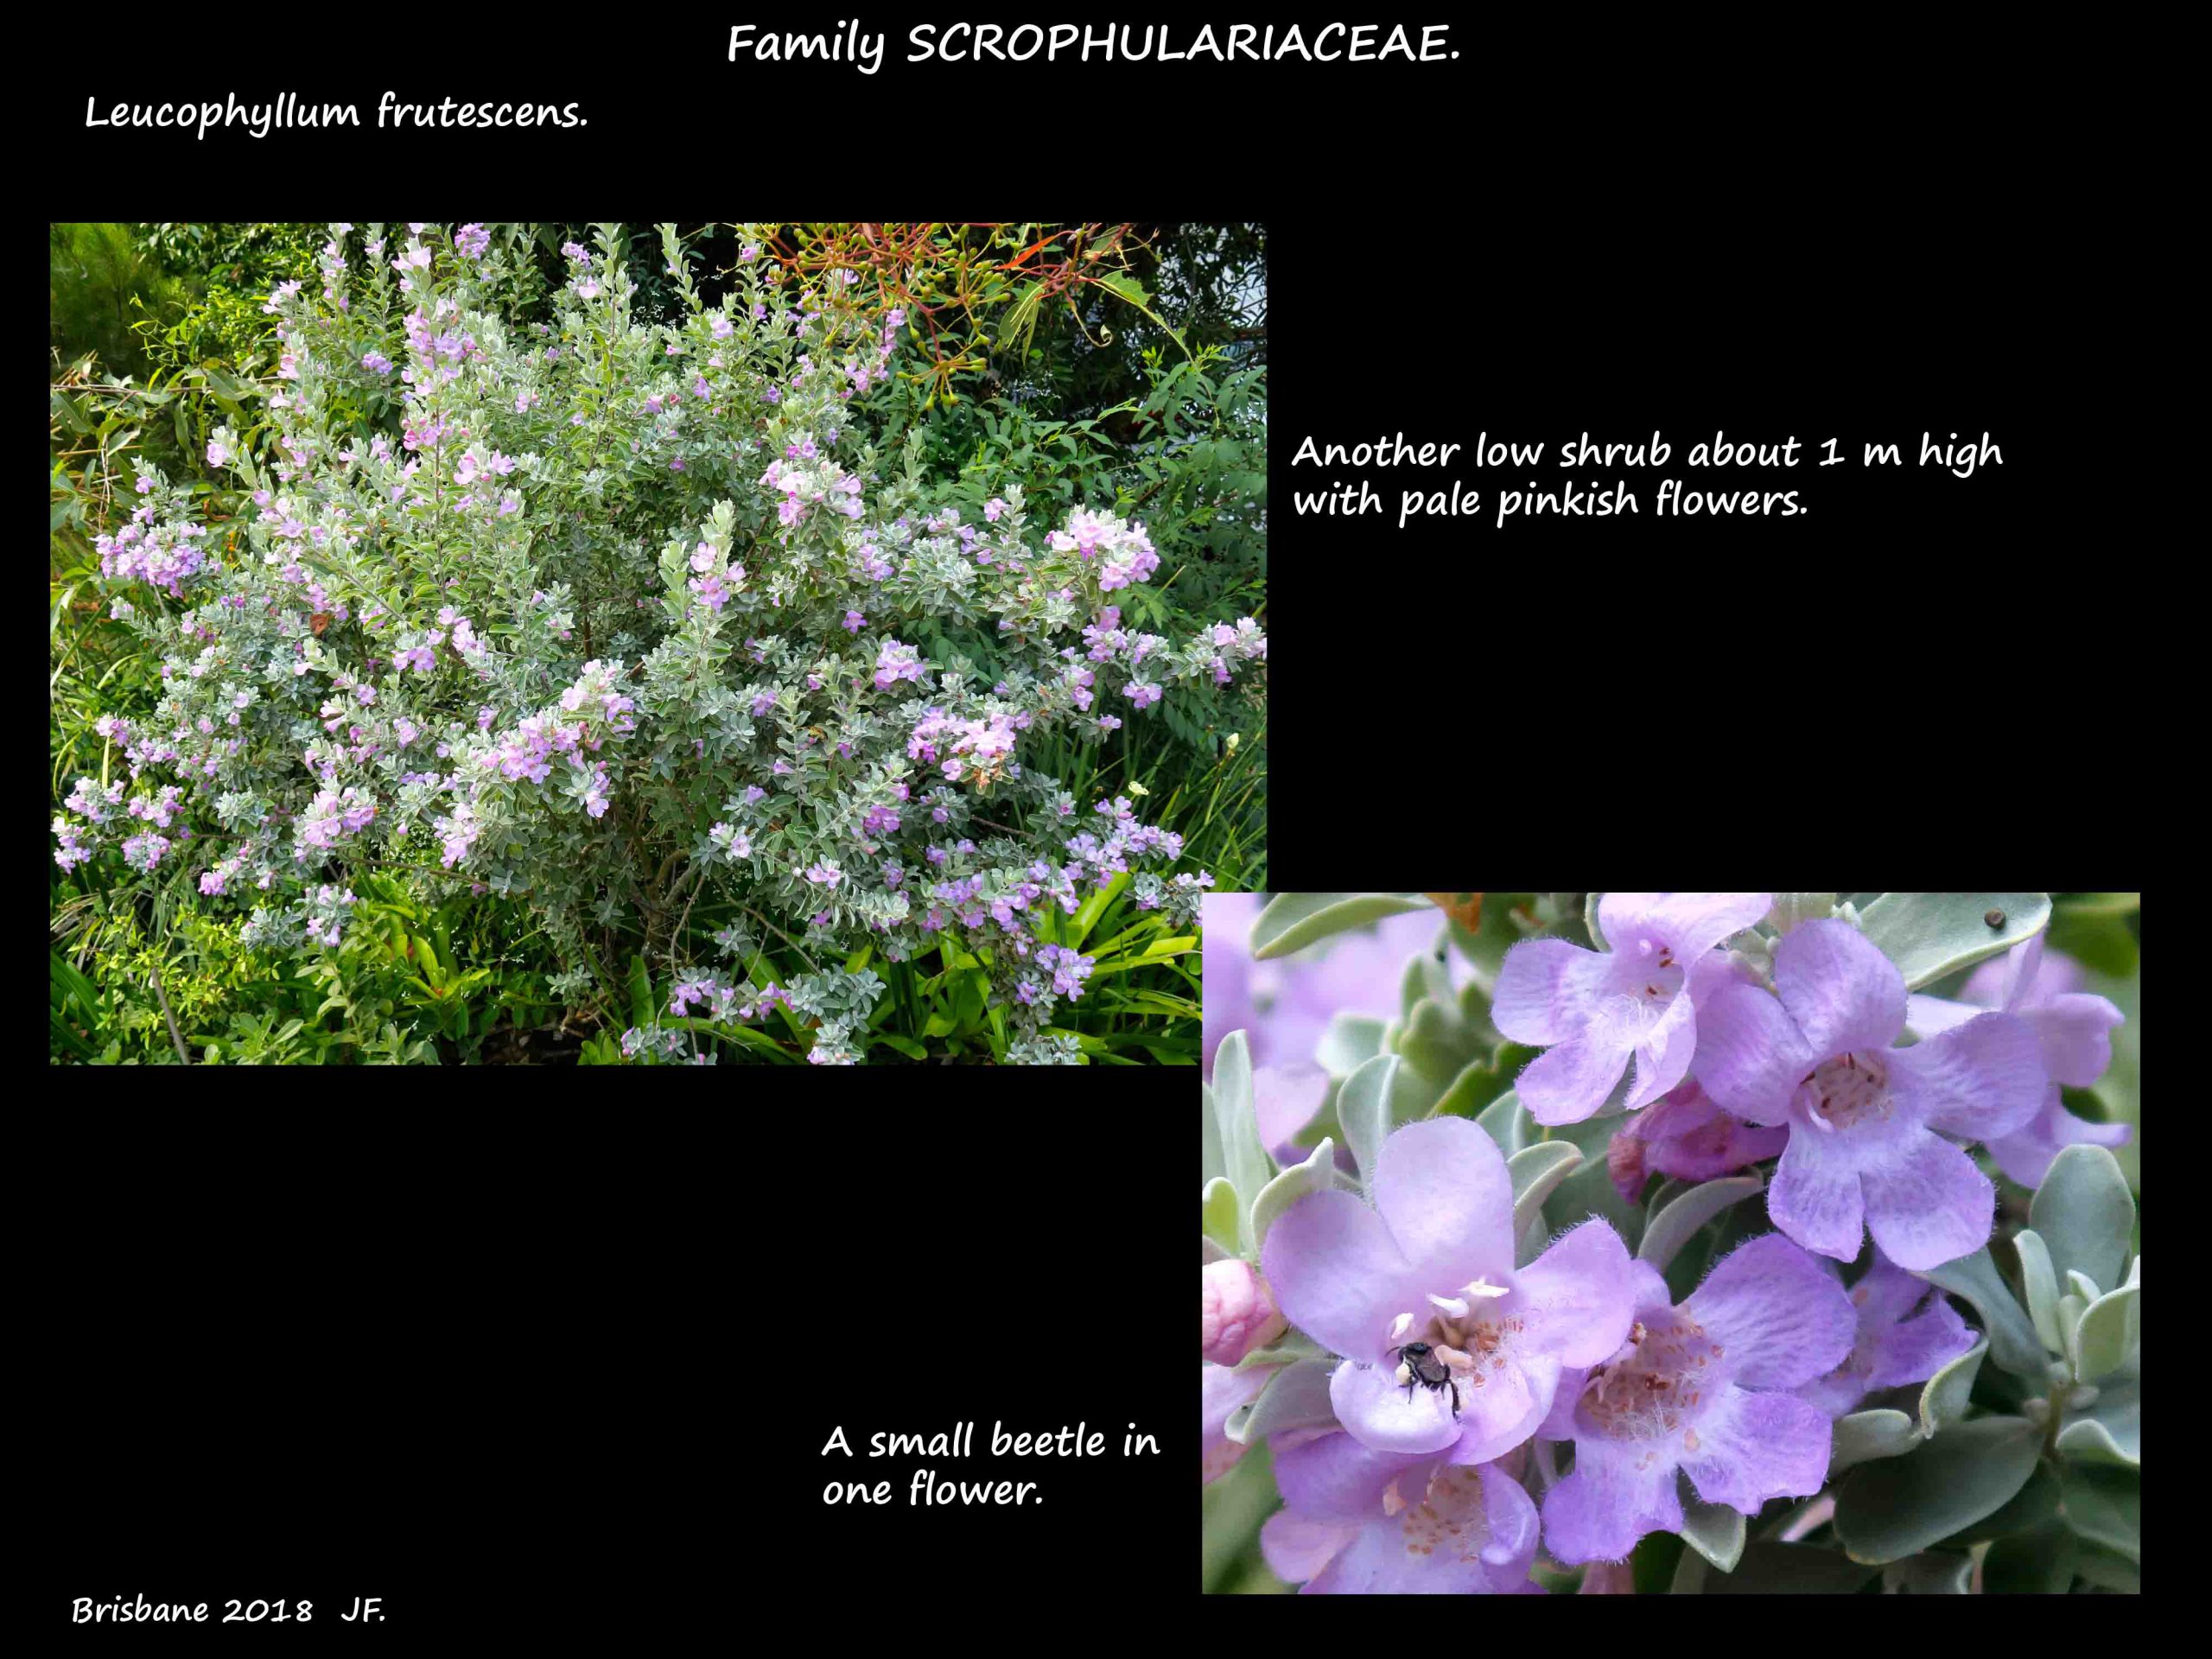 5 Another Leucophyllum shrub